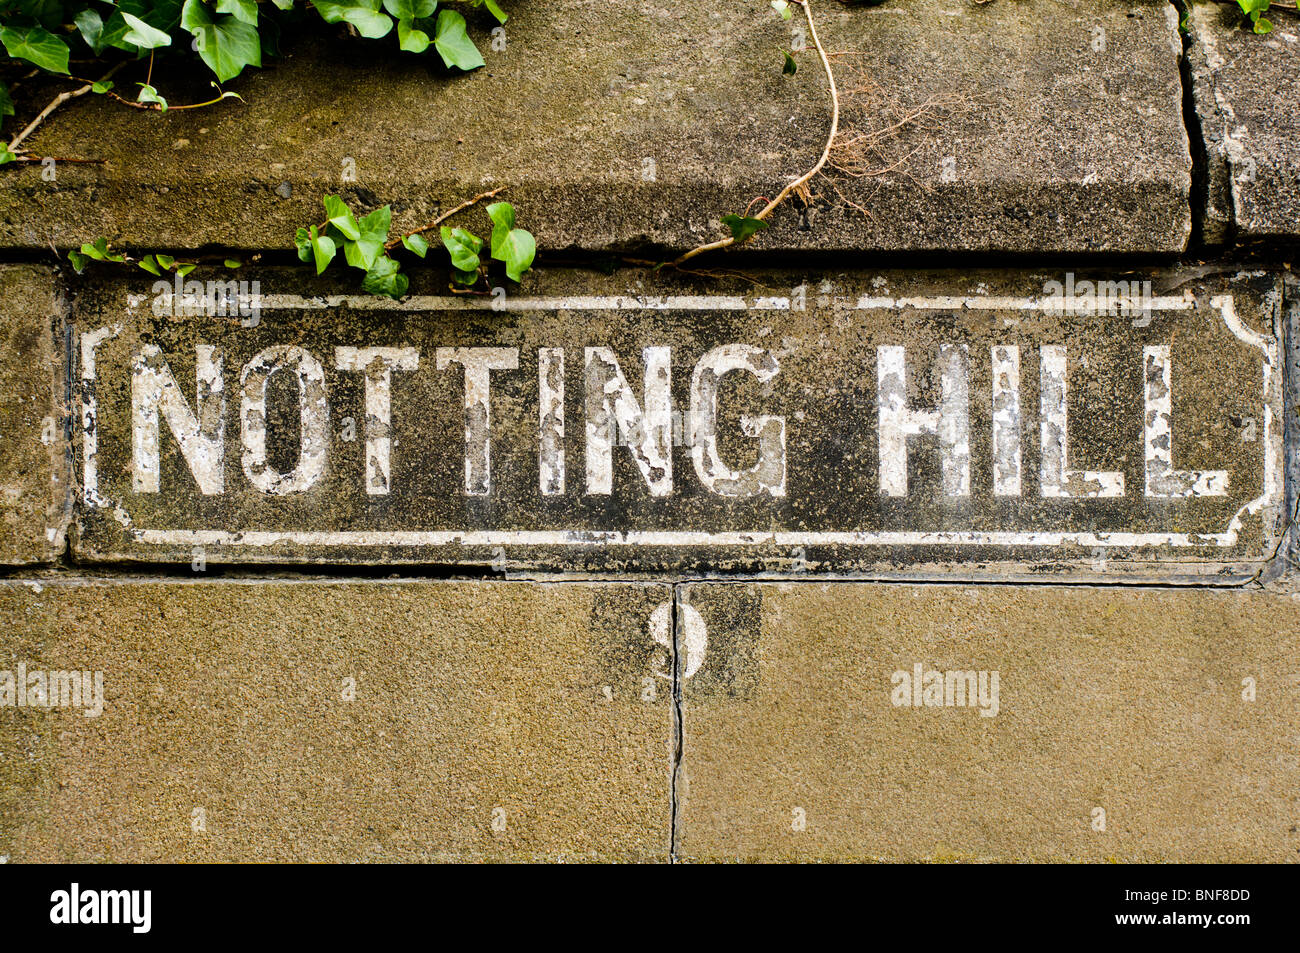 Straßenschild mit der Aufschrift "Notting Hill" Stockfoto